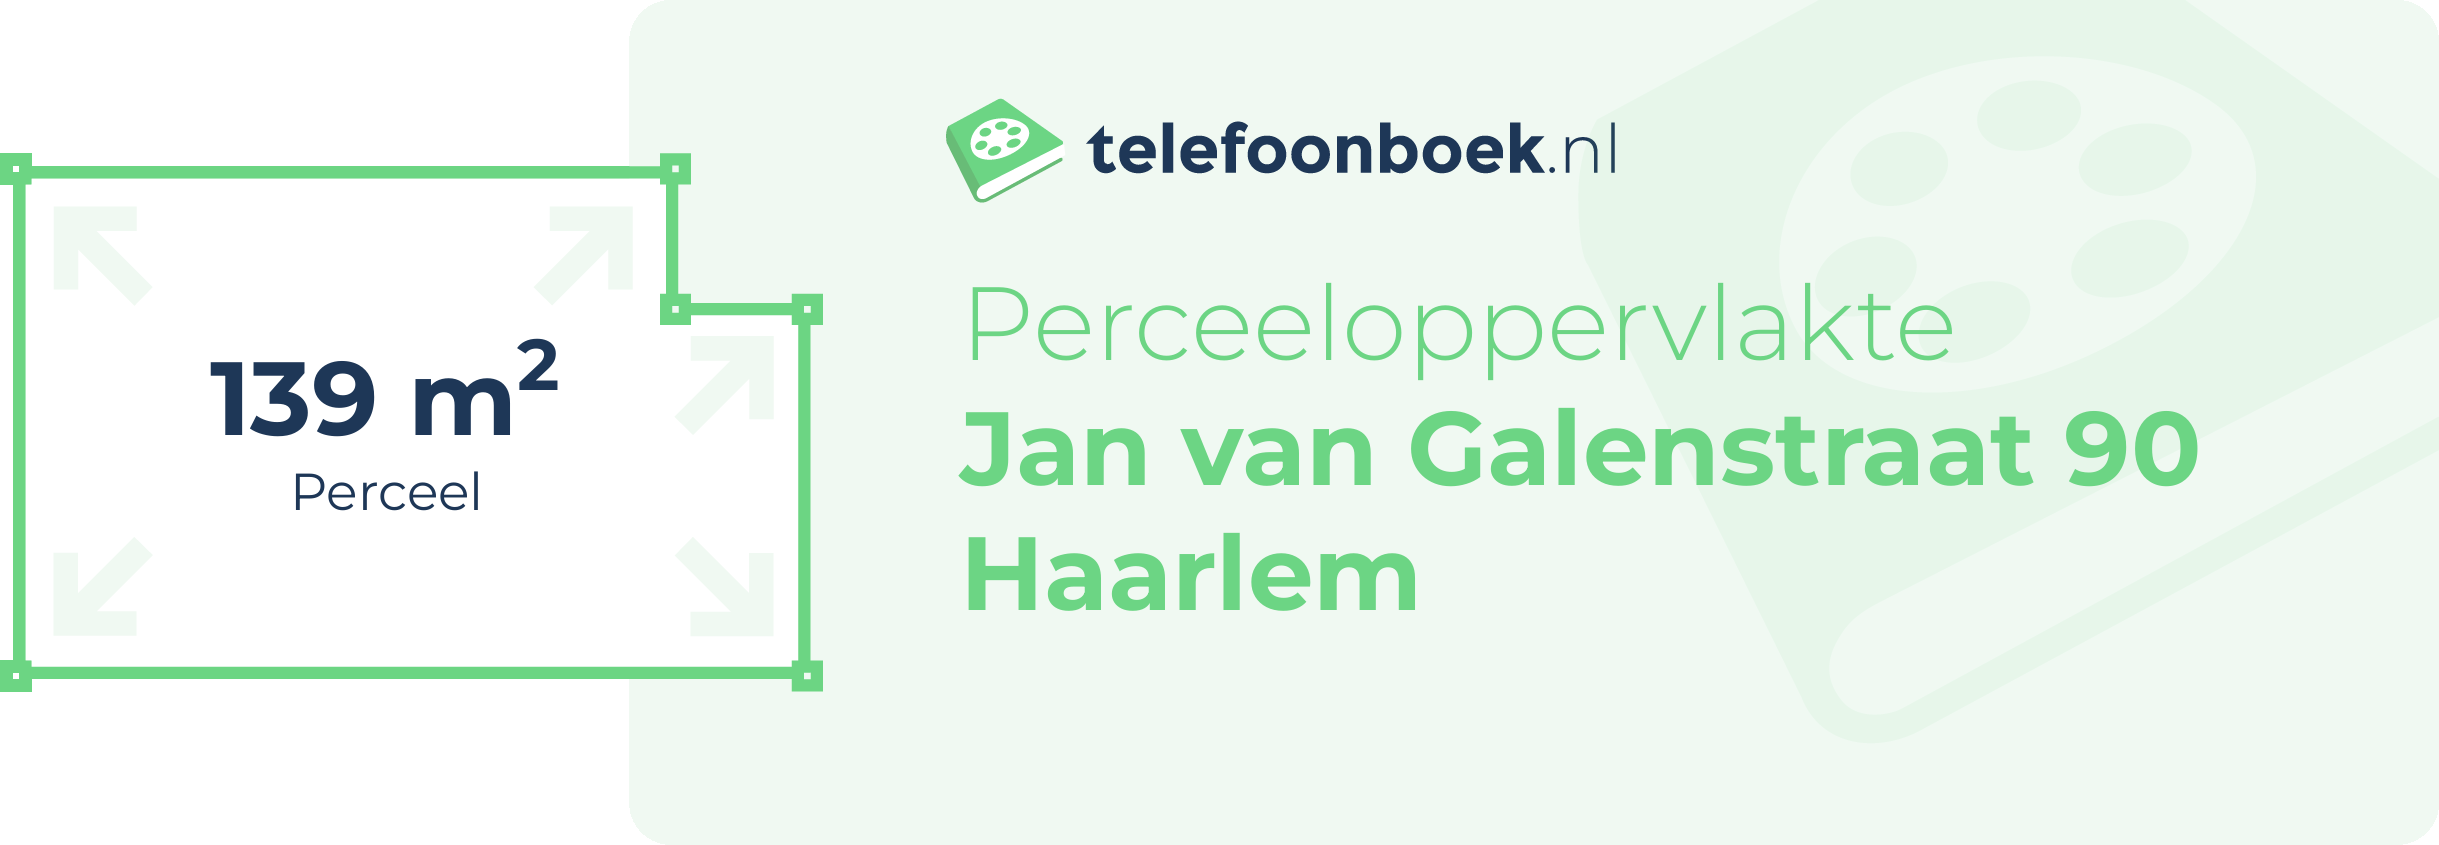 Perceeloppervlakte Jan Van Galenstraat 90 Haarlem